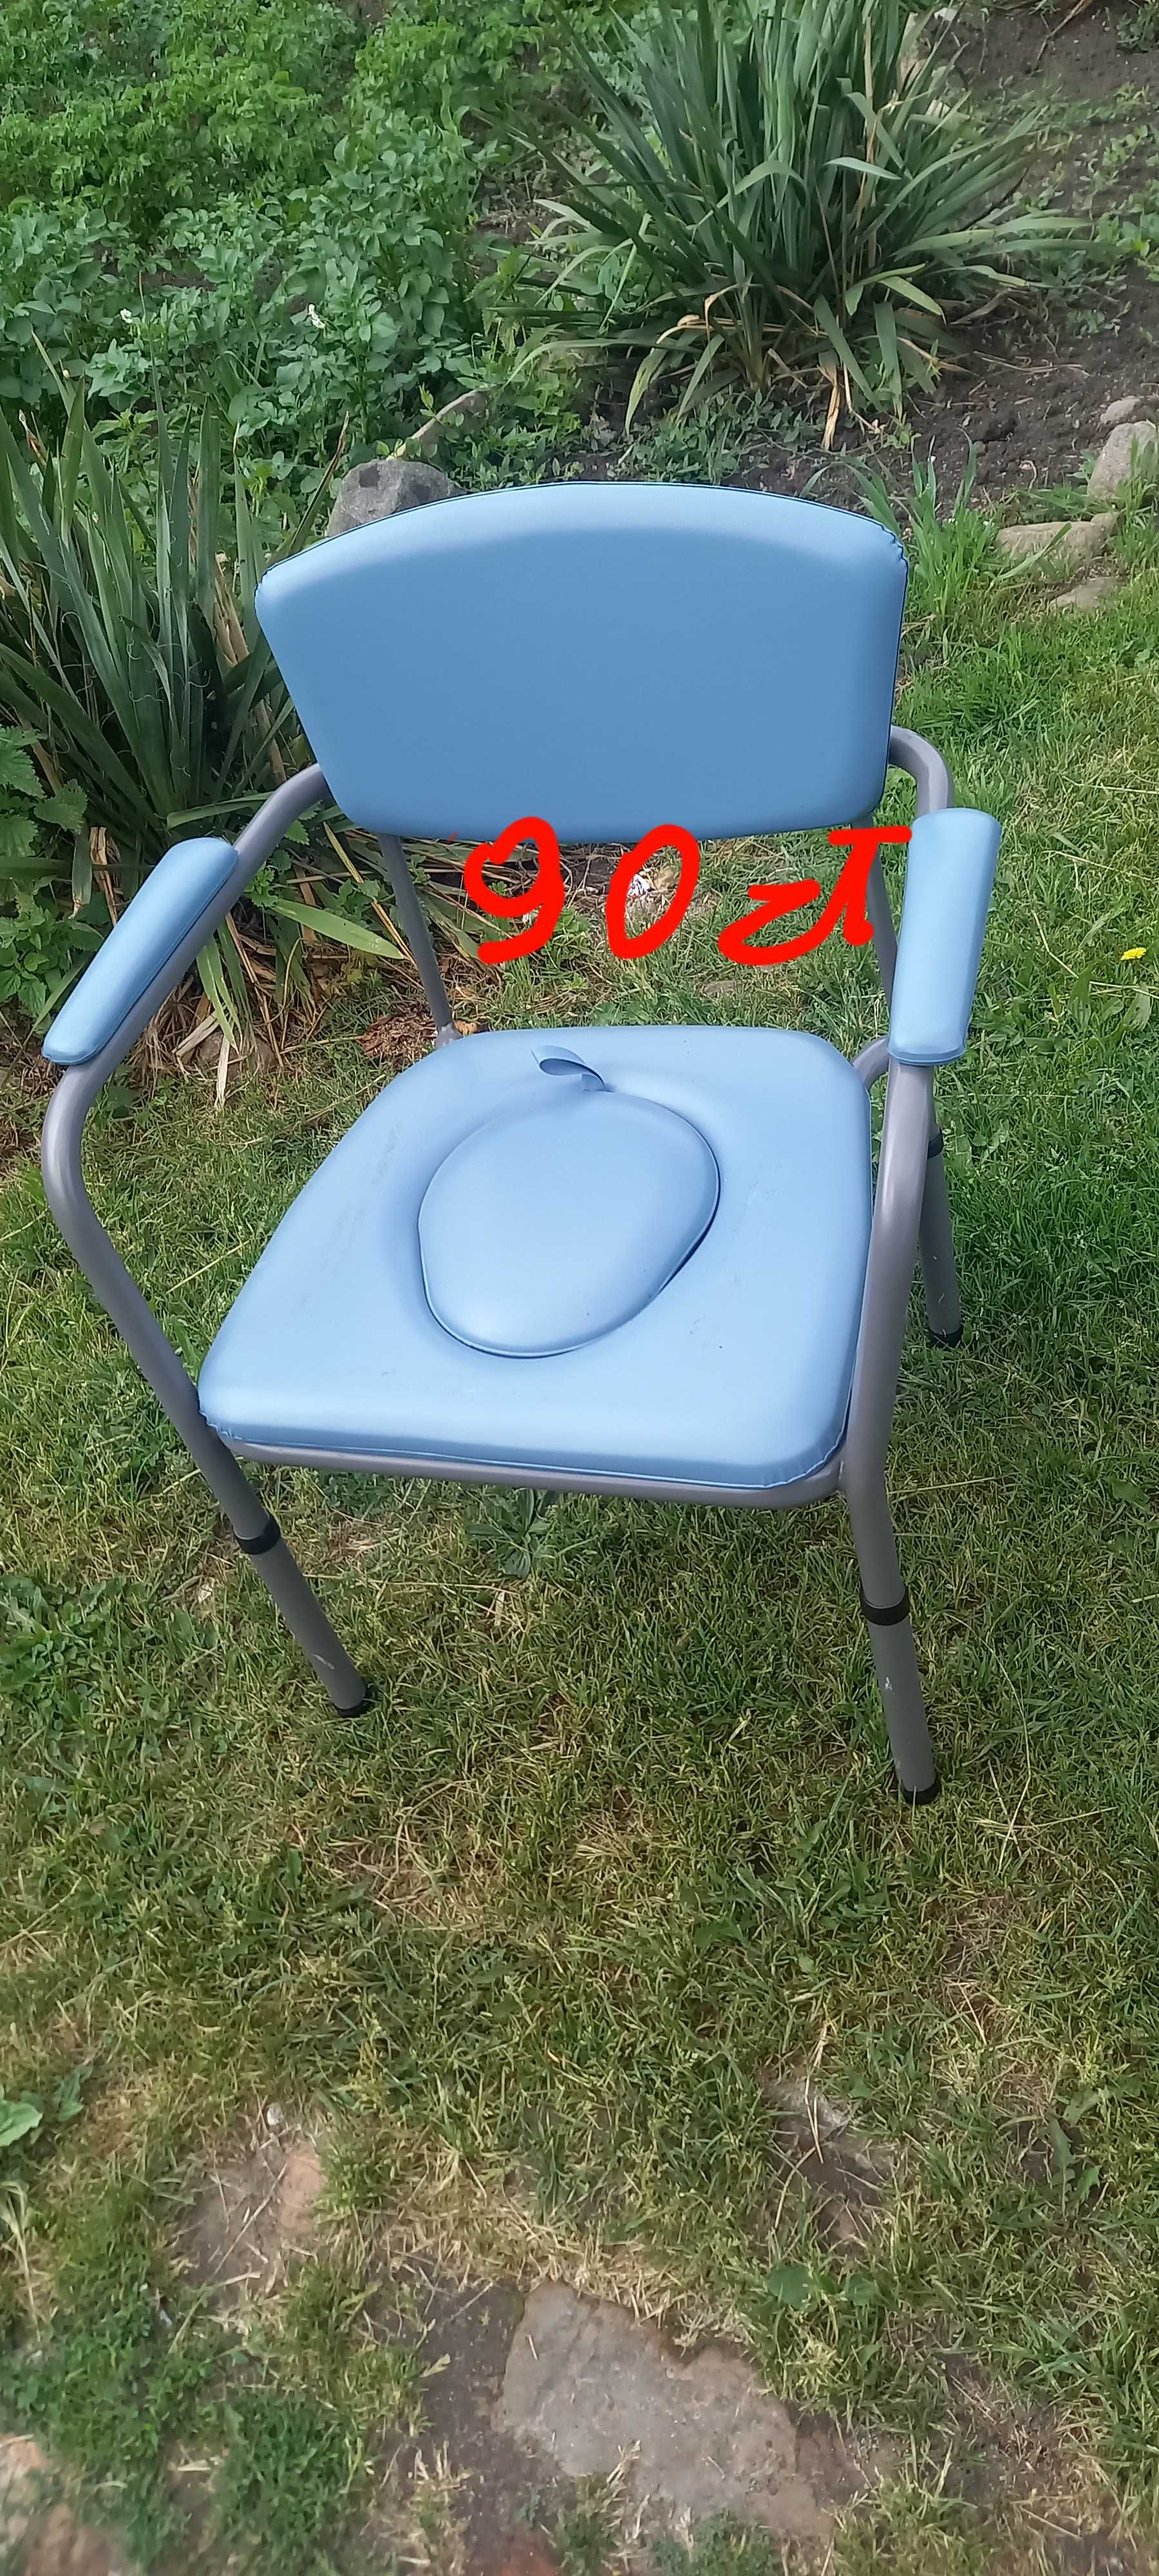 Krzesło toaleta regukowana wysokosc nóżkami